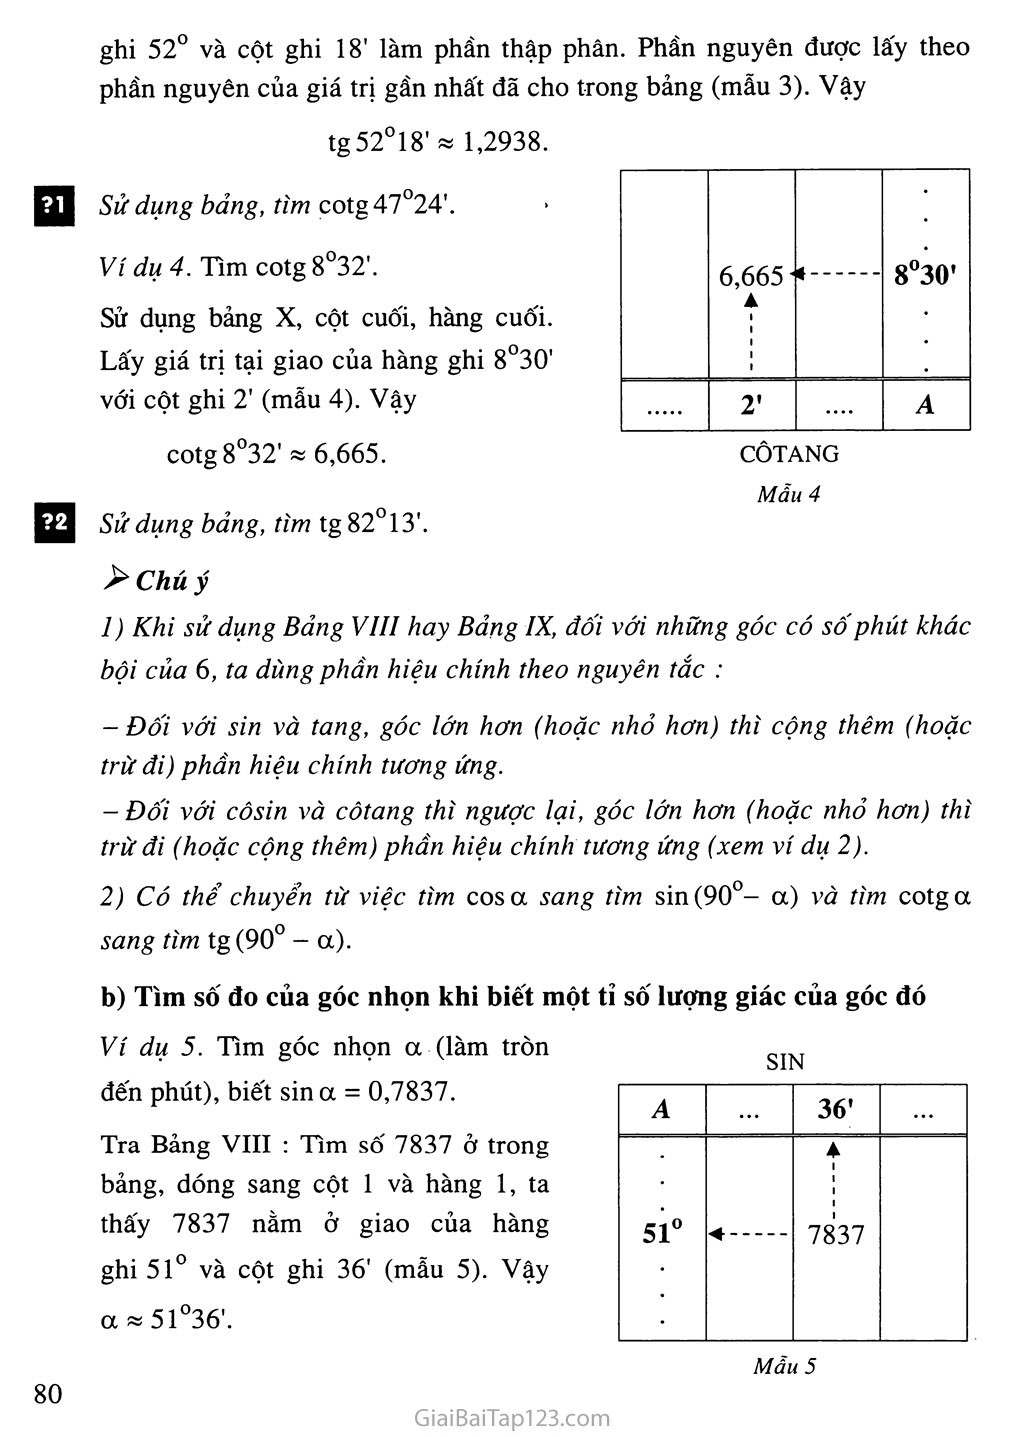 Bài 3. Bảng lượng giác trang 4